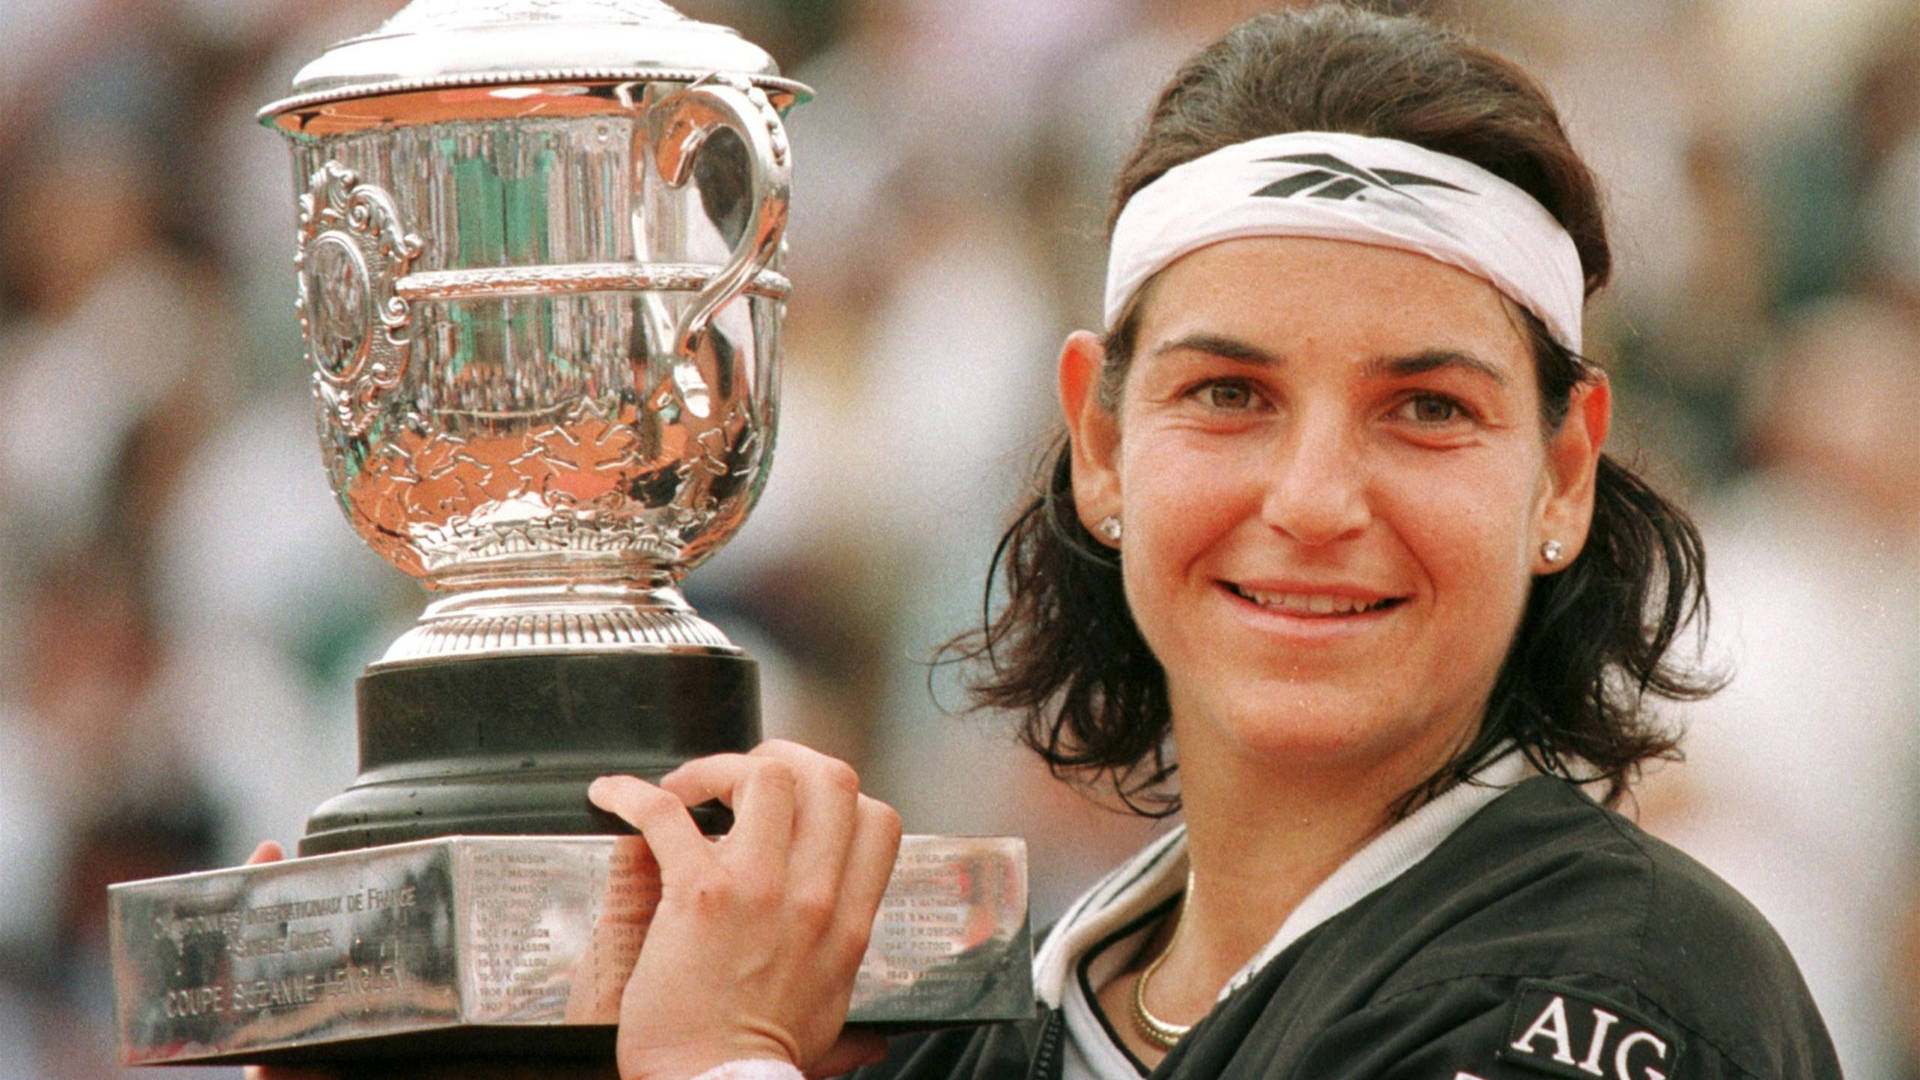 Arantxa Sánchez Vicario Vinder Fransk Tennis Open 1998 Wallpaper